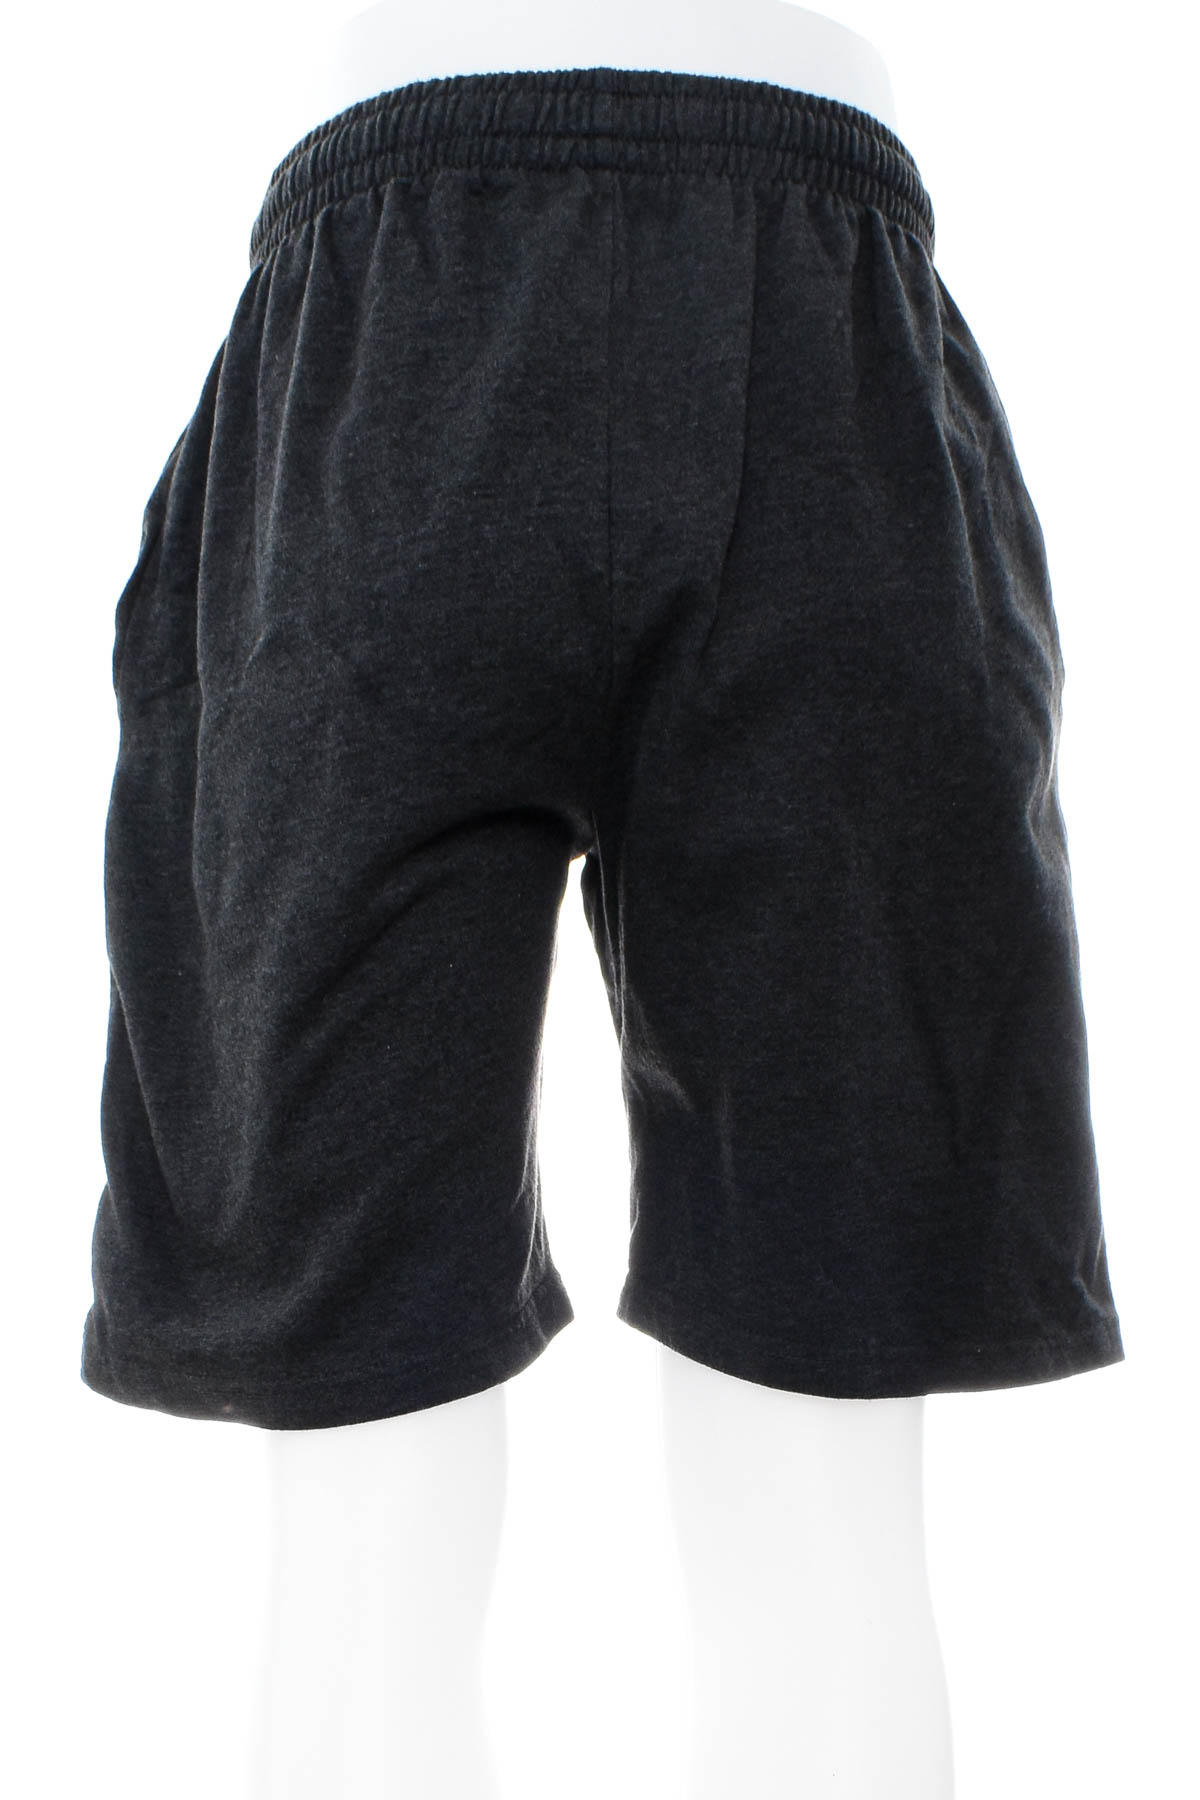 Men's shorts - Route 66 - 1